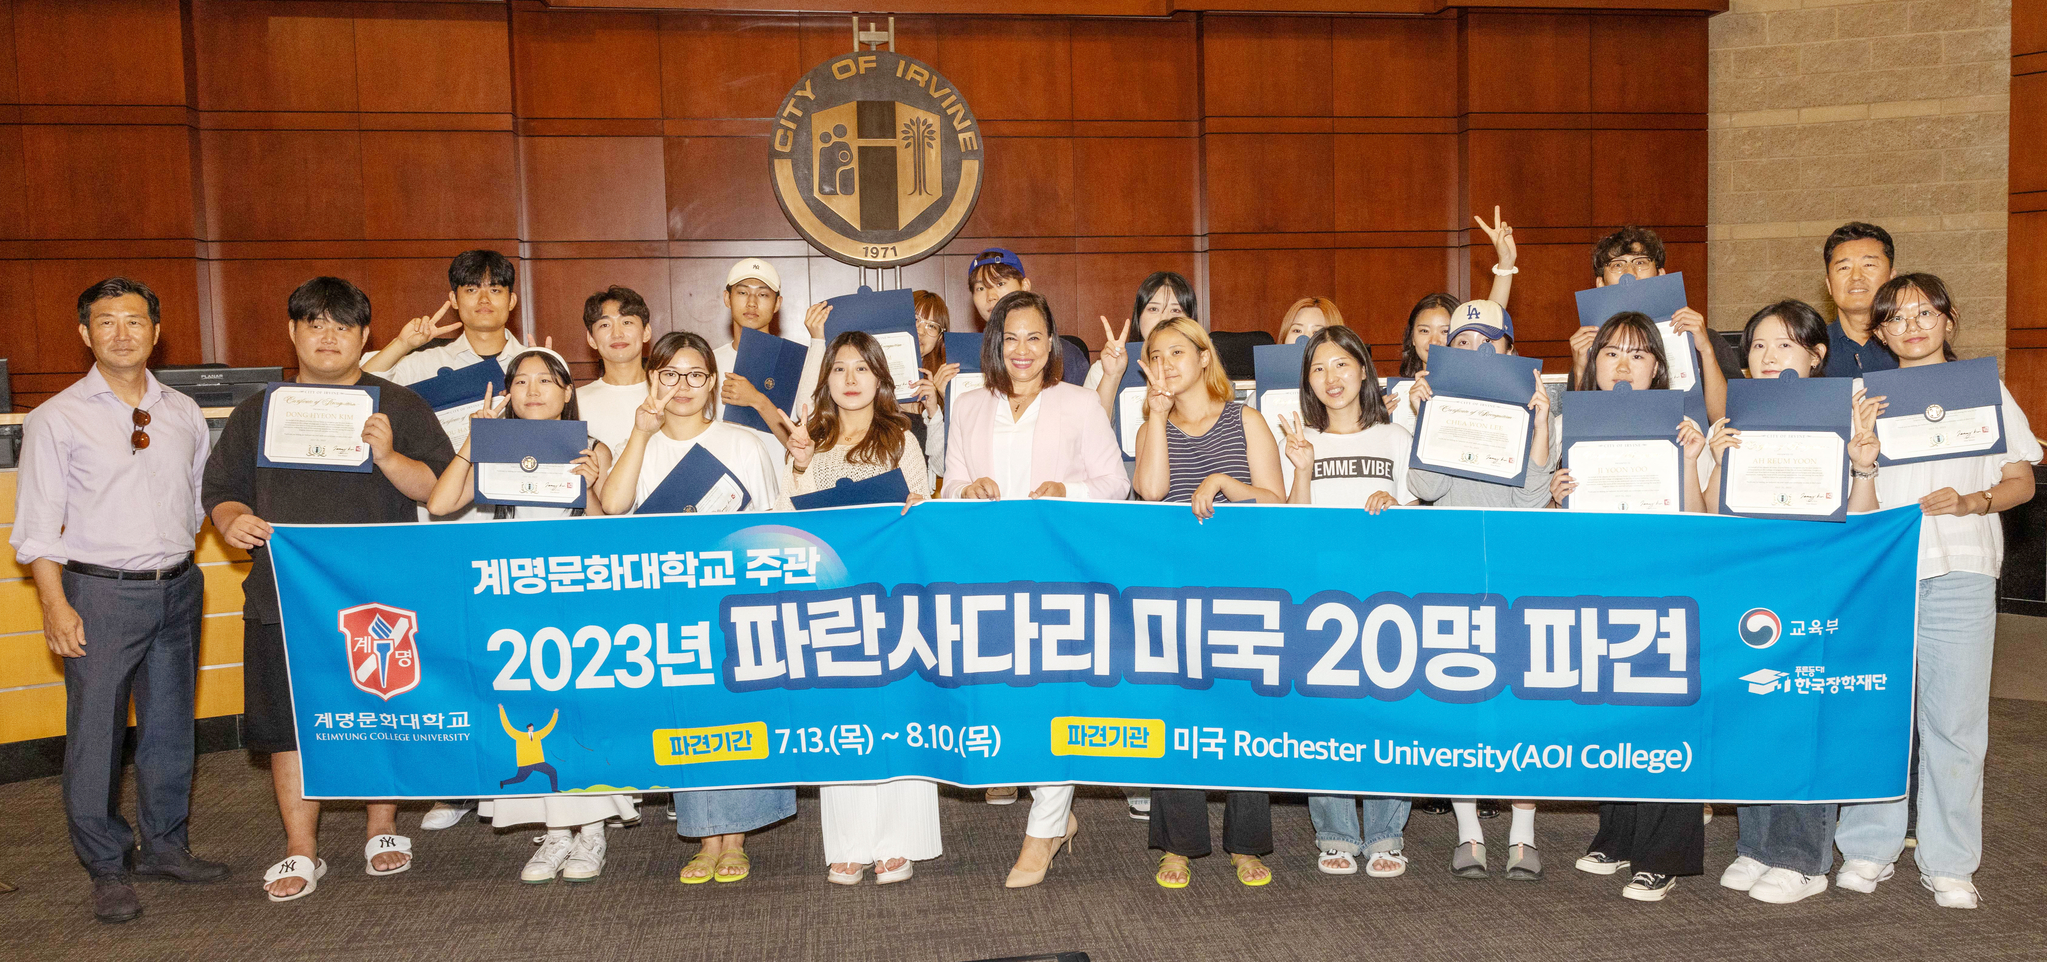 태미 김(앞줄 왼쪽에서 6번째) 어바인 부시장이 시청을 방문한 한국 대학생들과 함께 자리했다. ［어바인 시 제공］